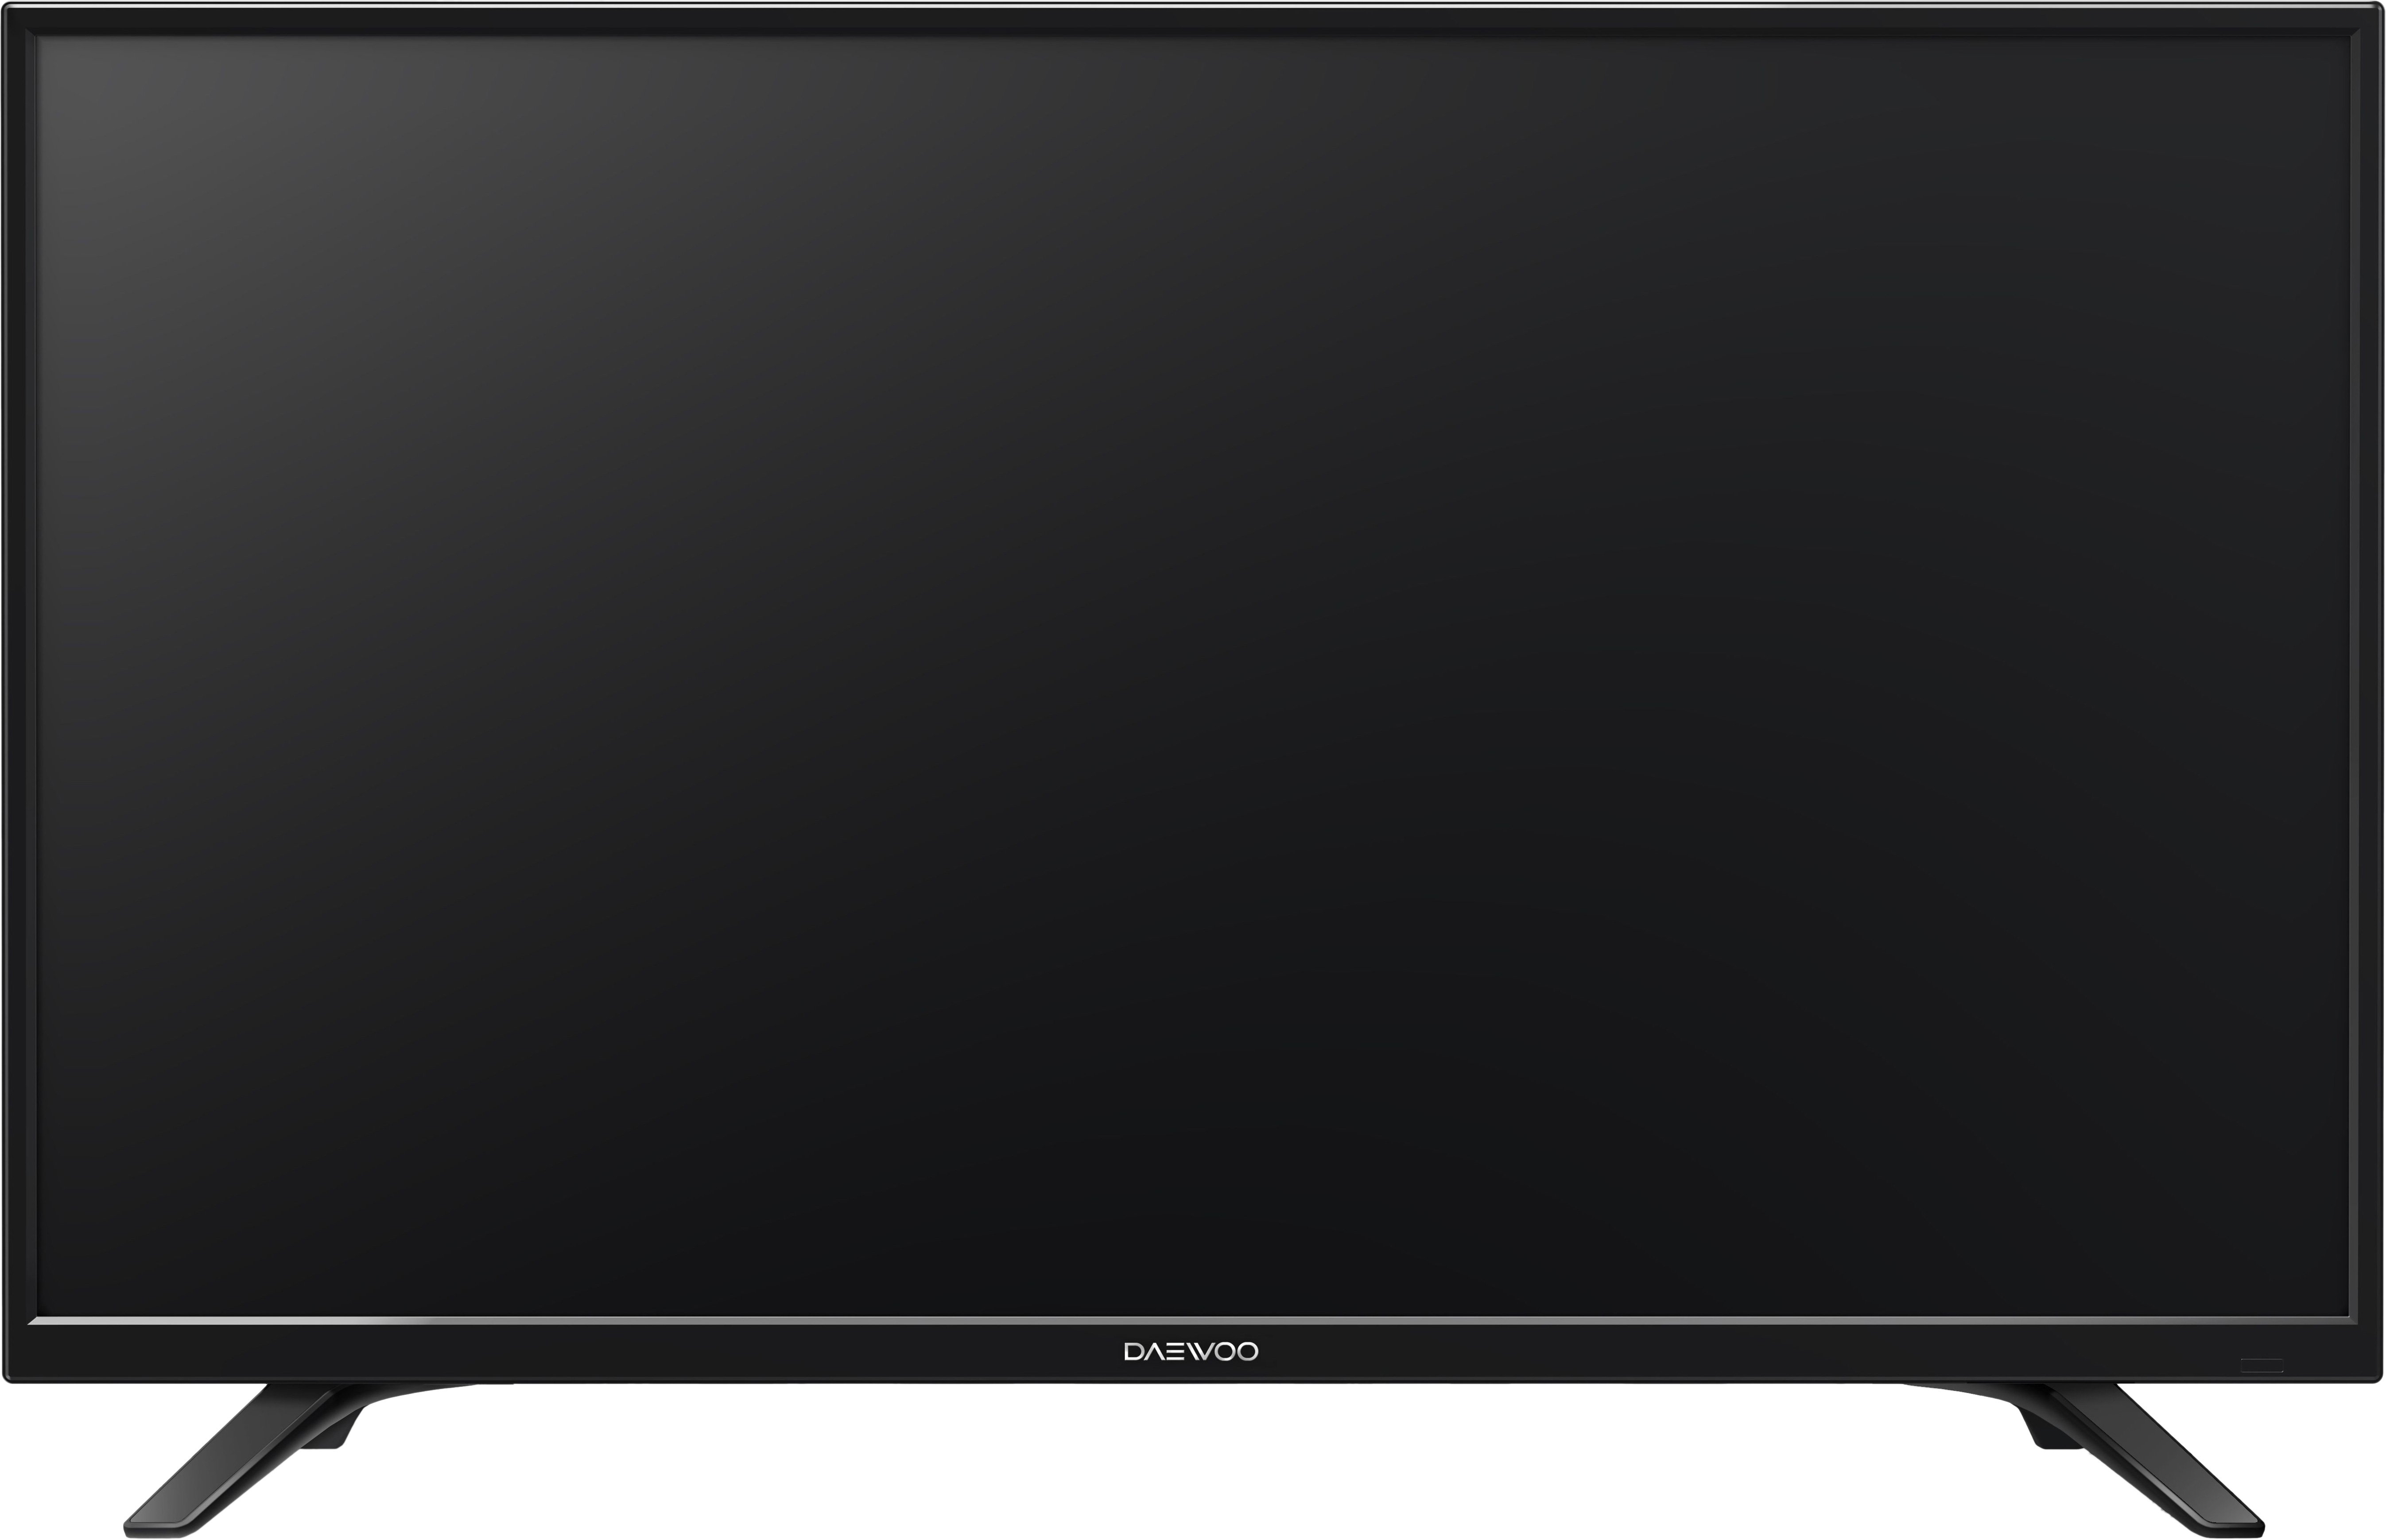 Телевизор 32 см. Телевизор 32 дайвоо дюйма. L32r640vte. 32 Дюма телевизор в сантиметрах. 32 Дюйма в сантиметрах телевизор диагональ.